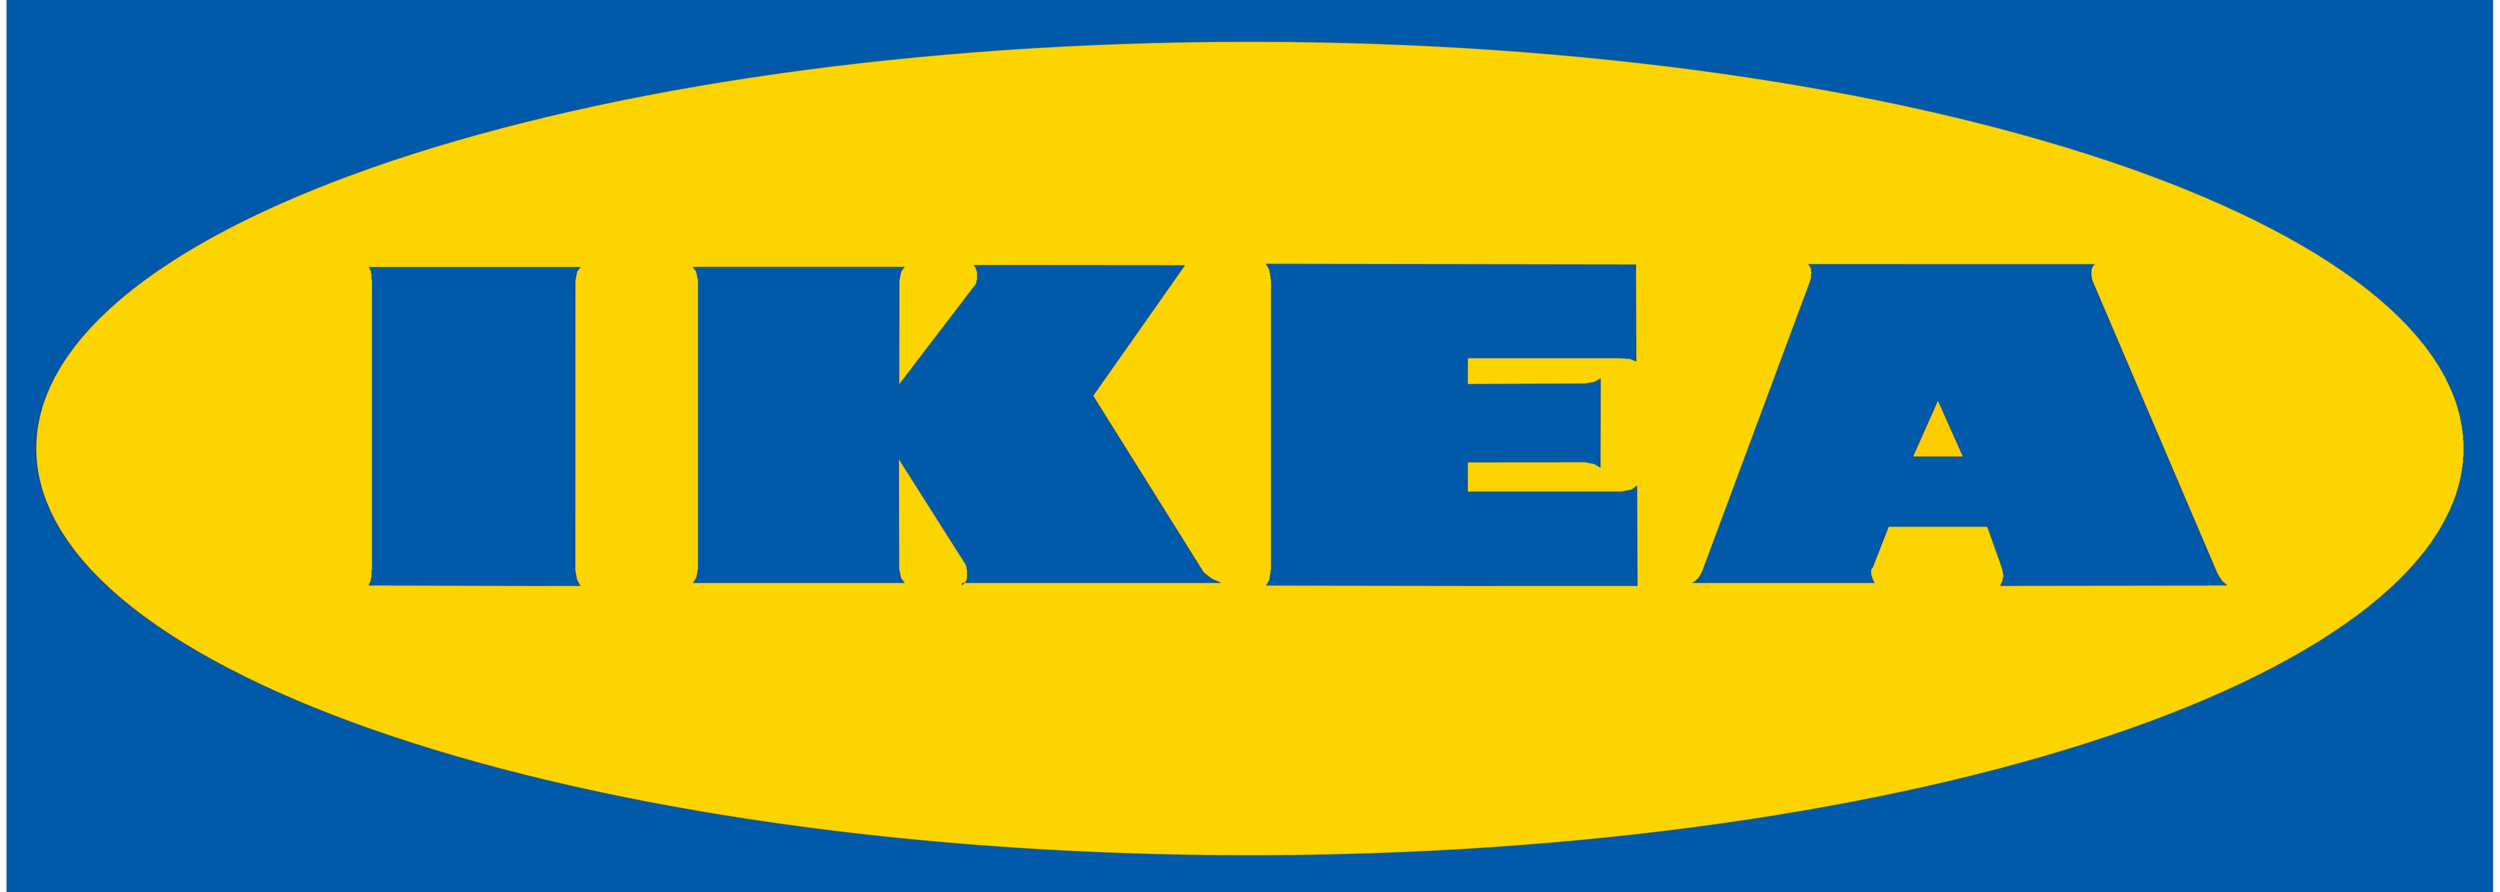 Ikea_logo.png